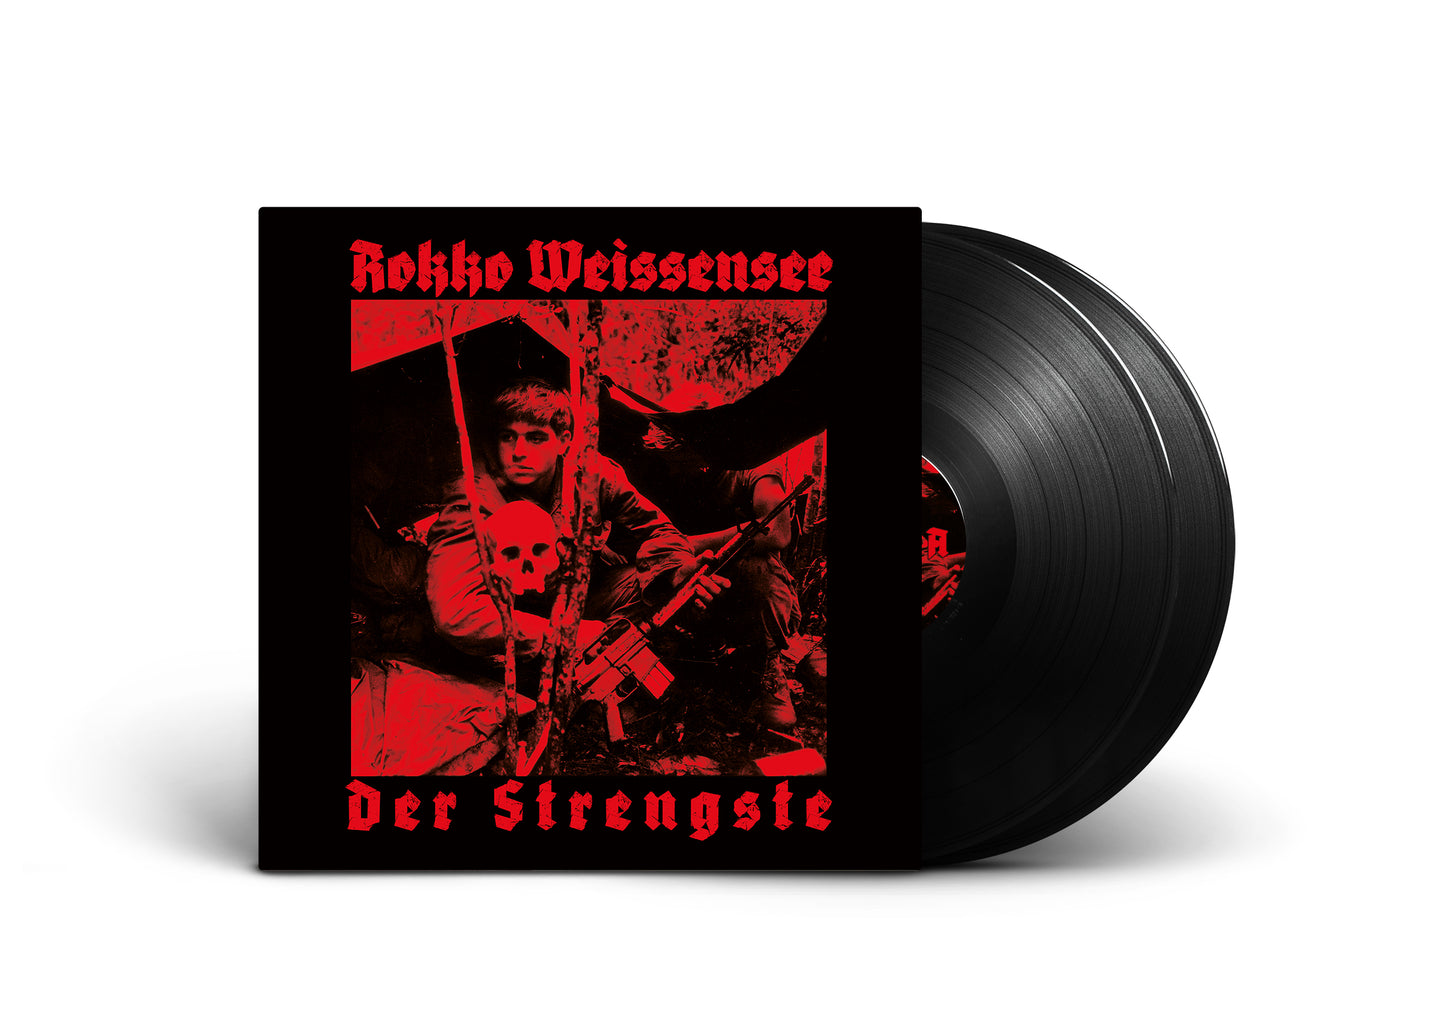 Pre-Order: Rokko Weissensee - Der Strengste Reissue - 2LP